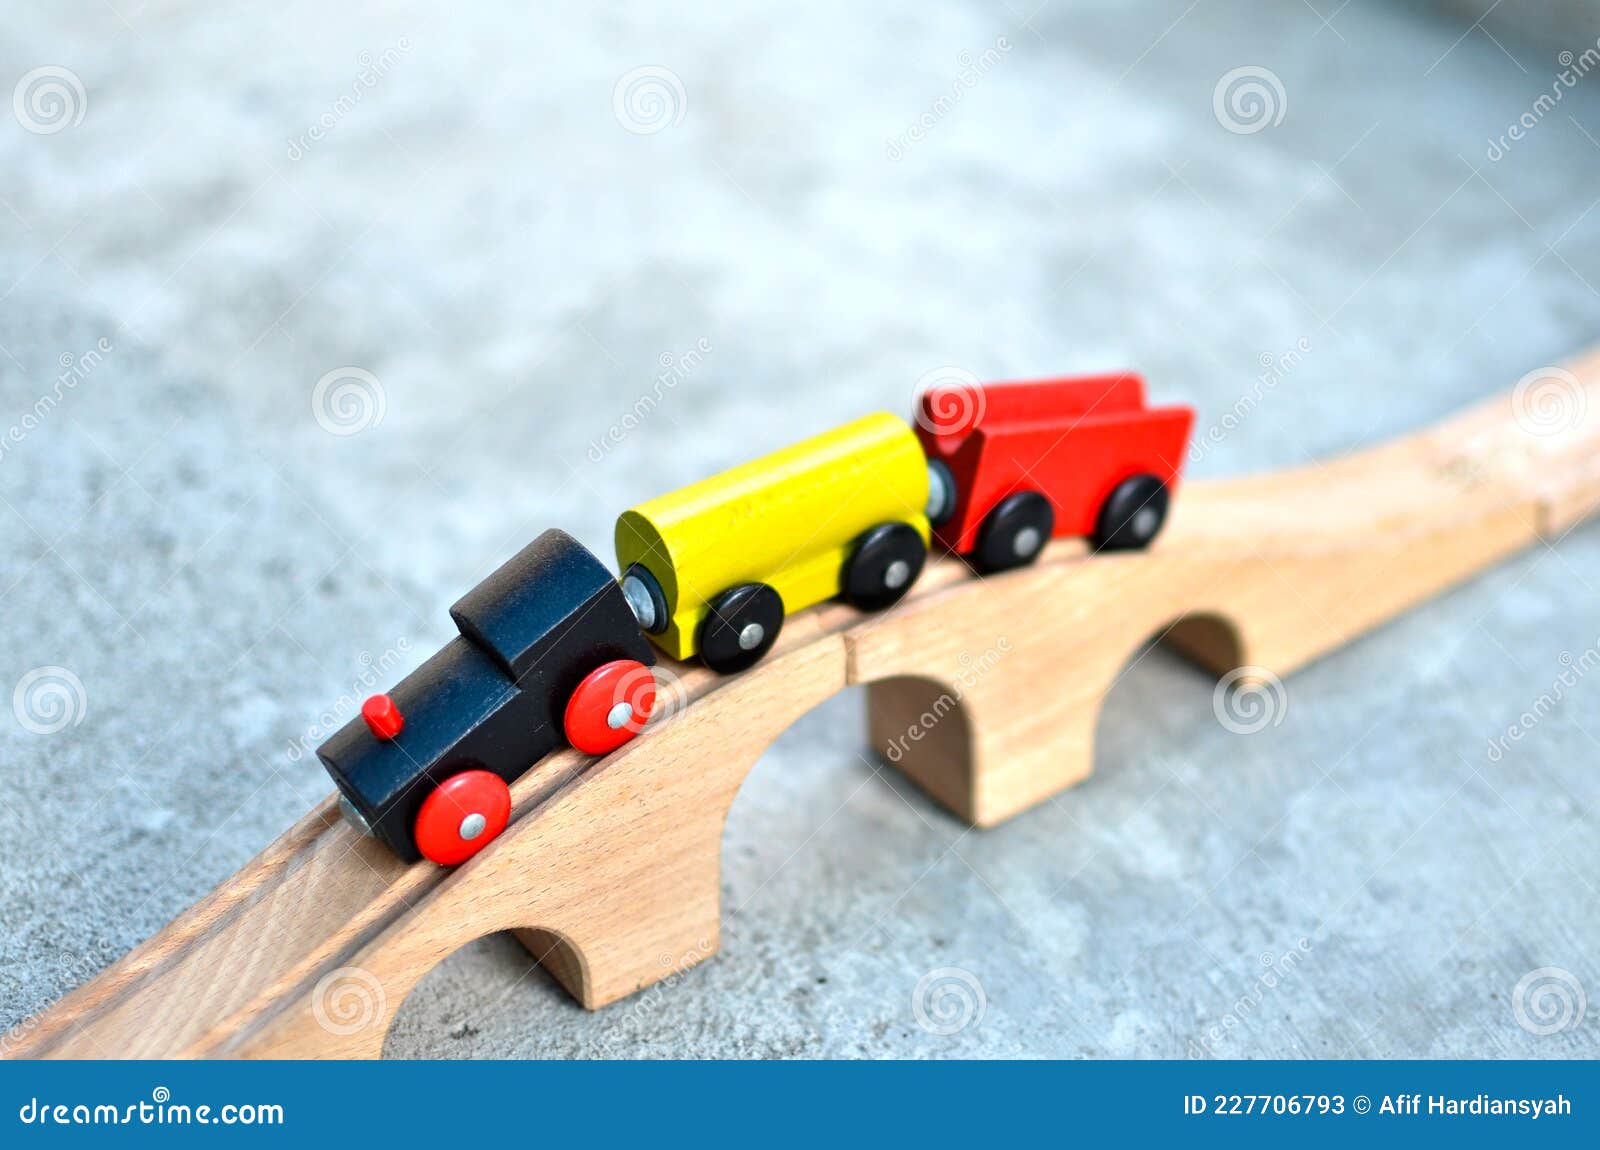 Trem de Madeira - Brinquedo Educativo